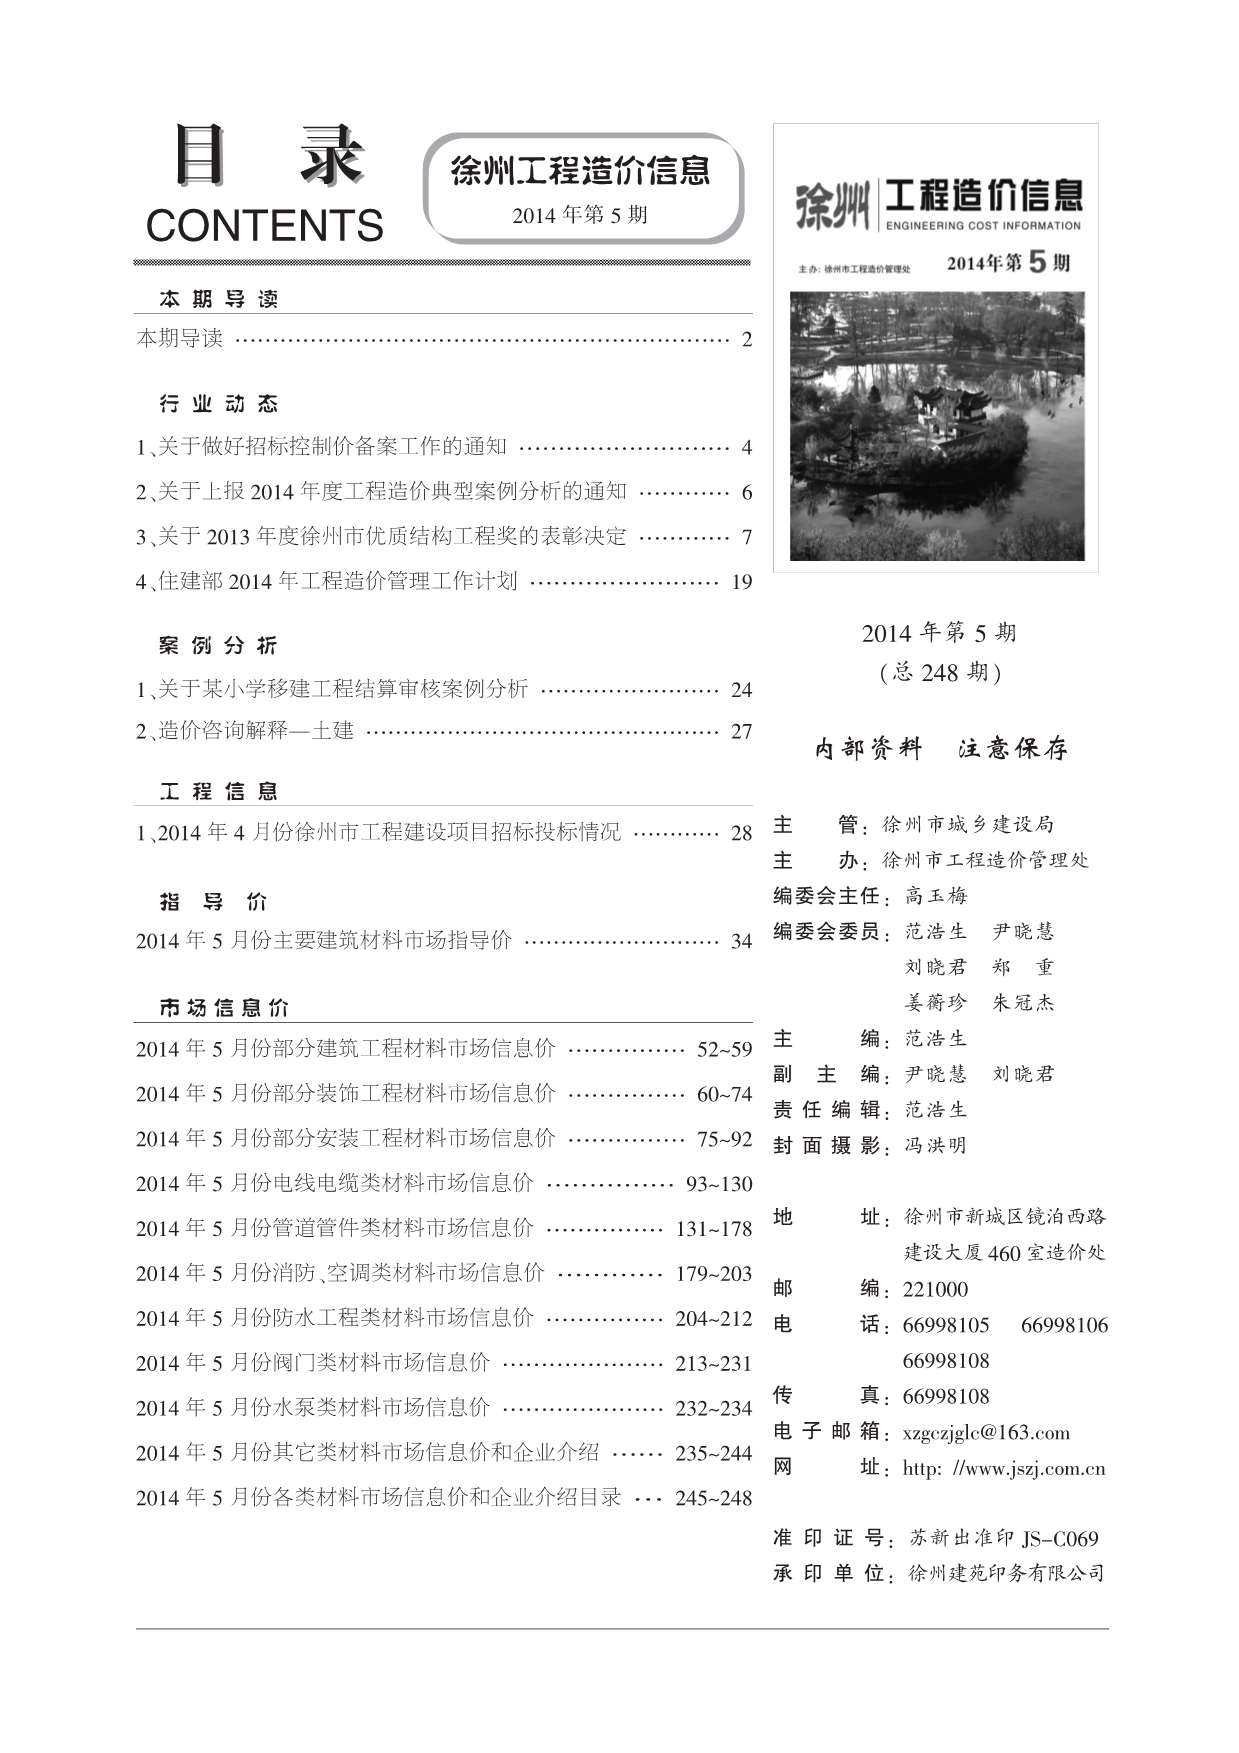 徐州市2014年5月工程信息价_徐州市信息价期刊PDF扫描件电子版